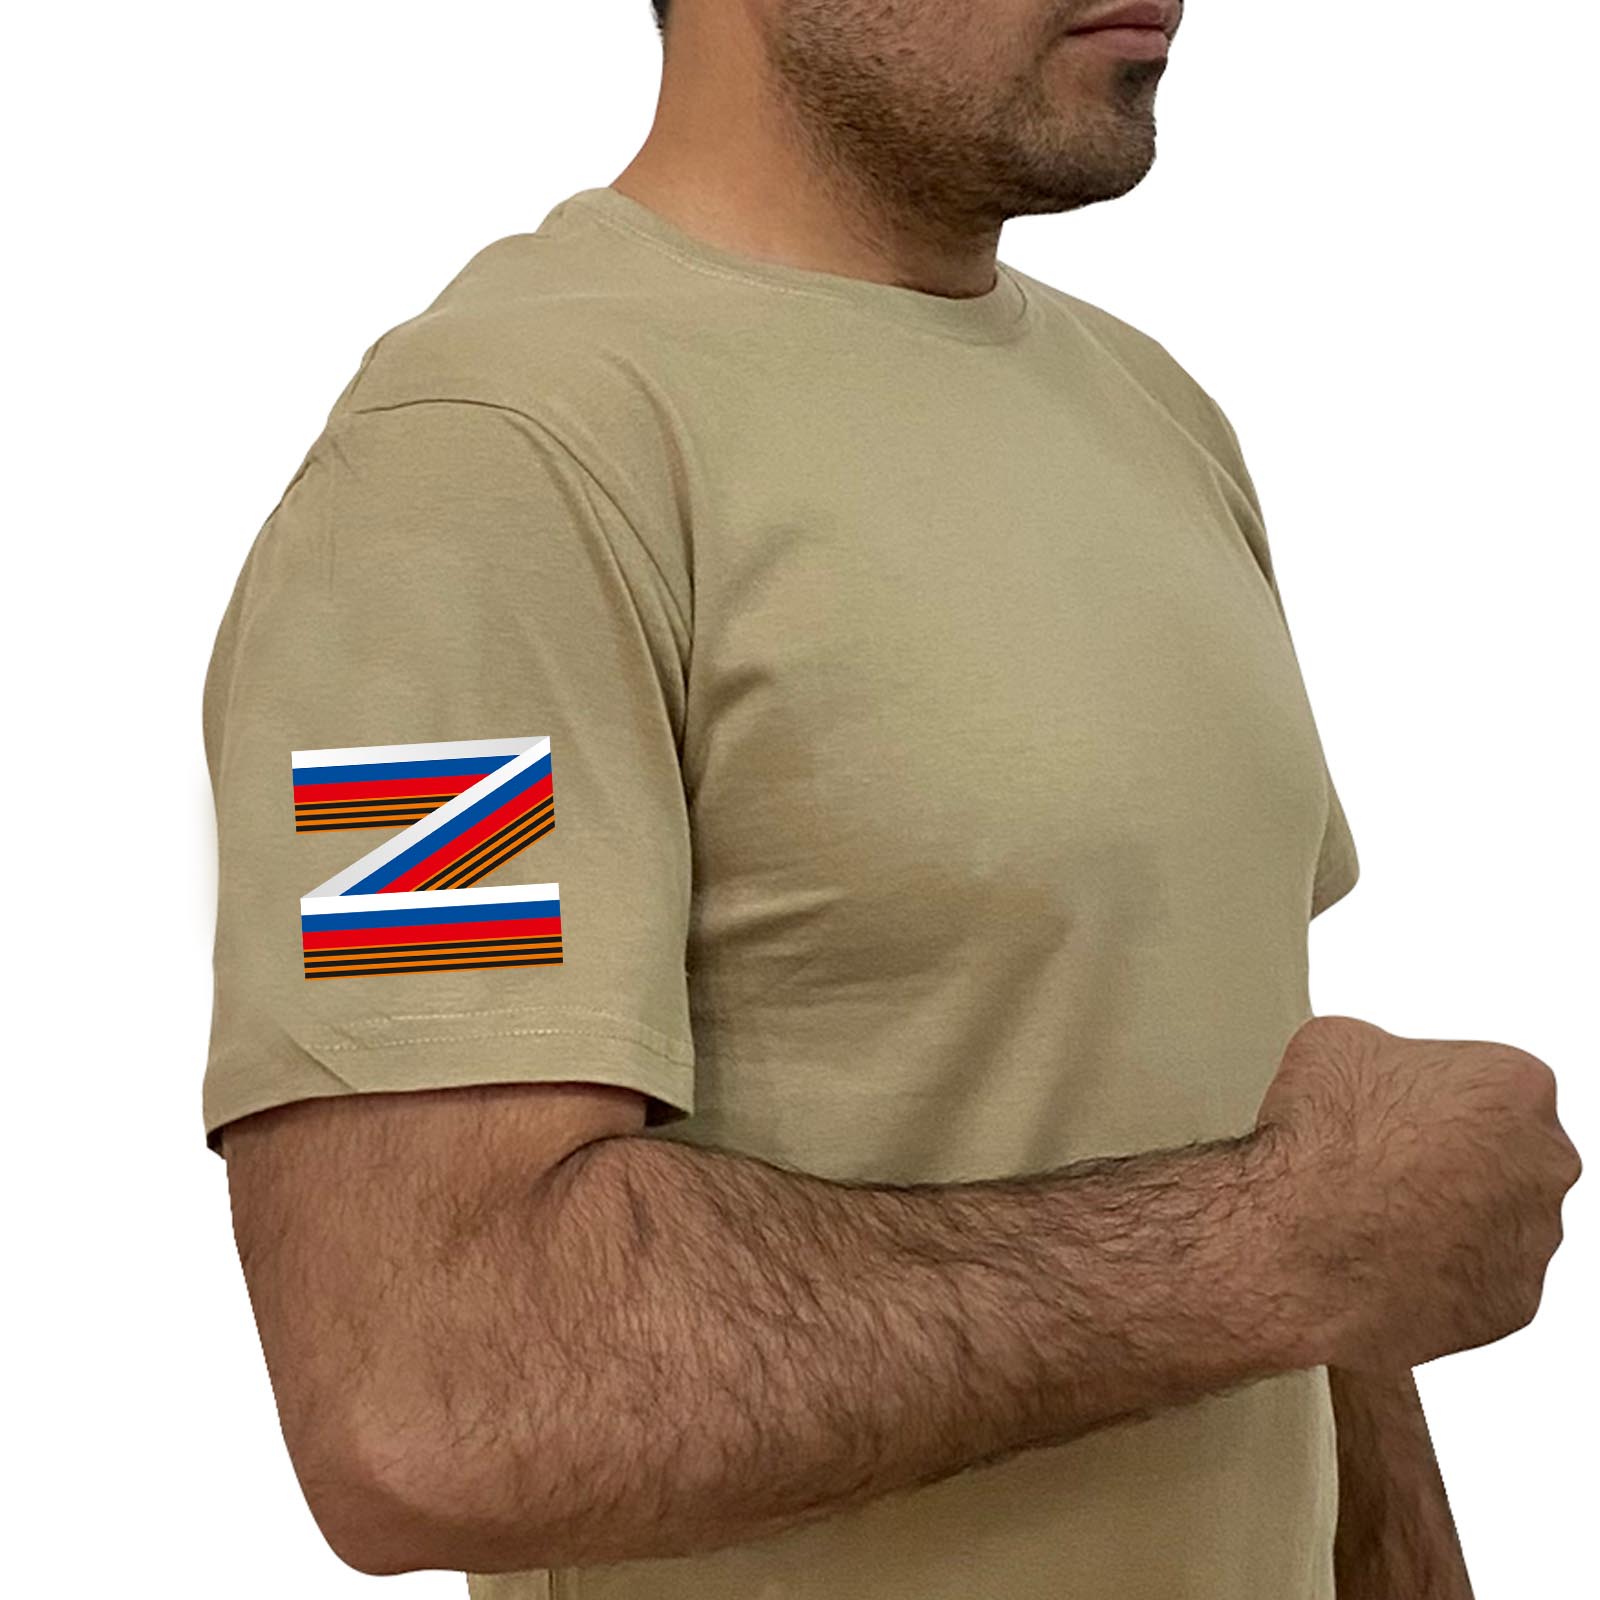 Купить практичную мужскую футболку с литерой Z онлайн